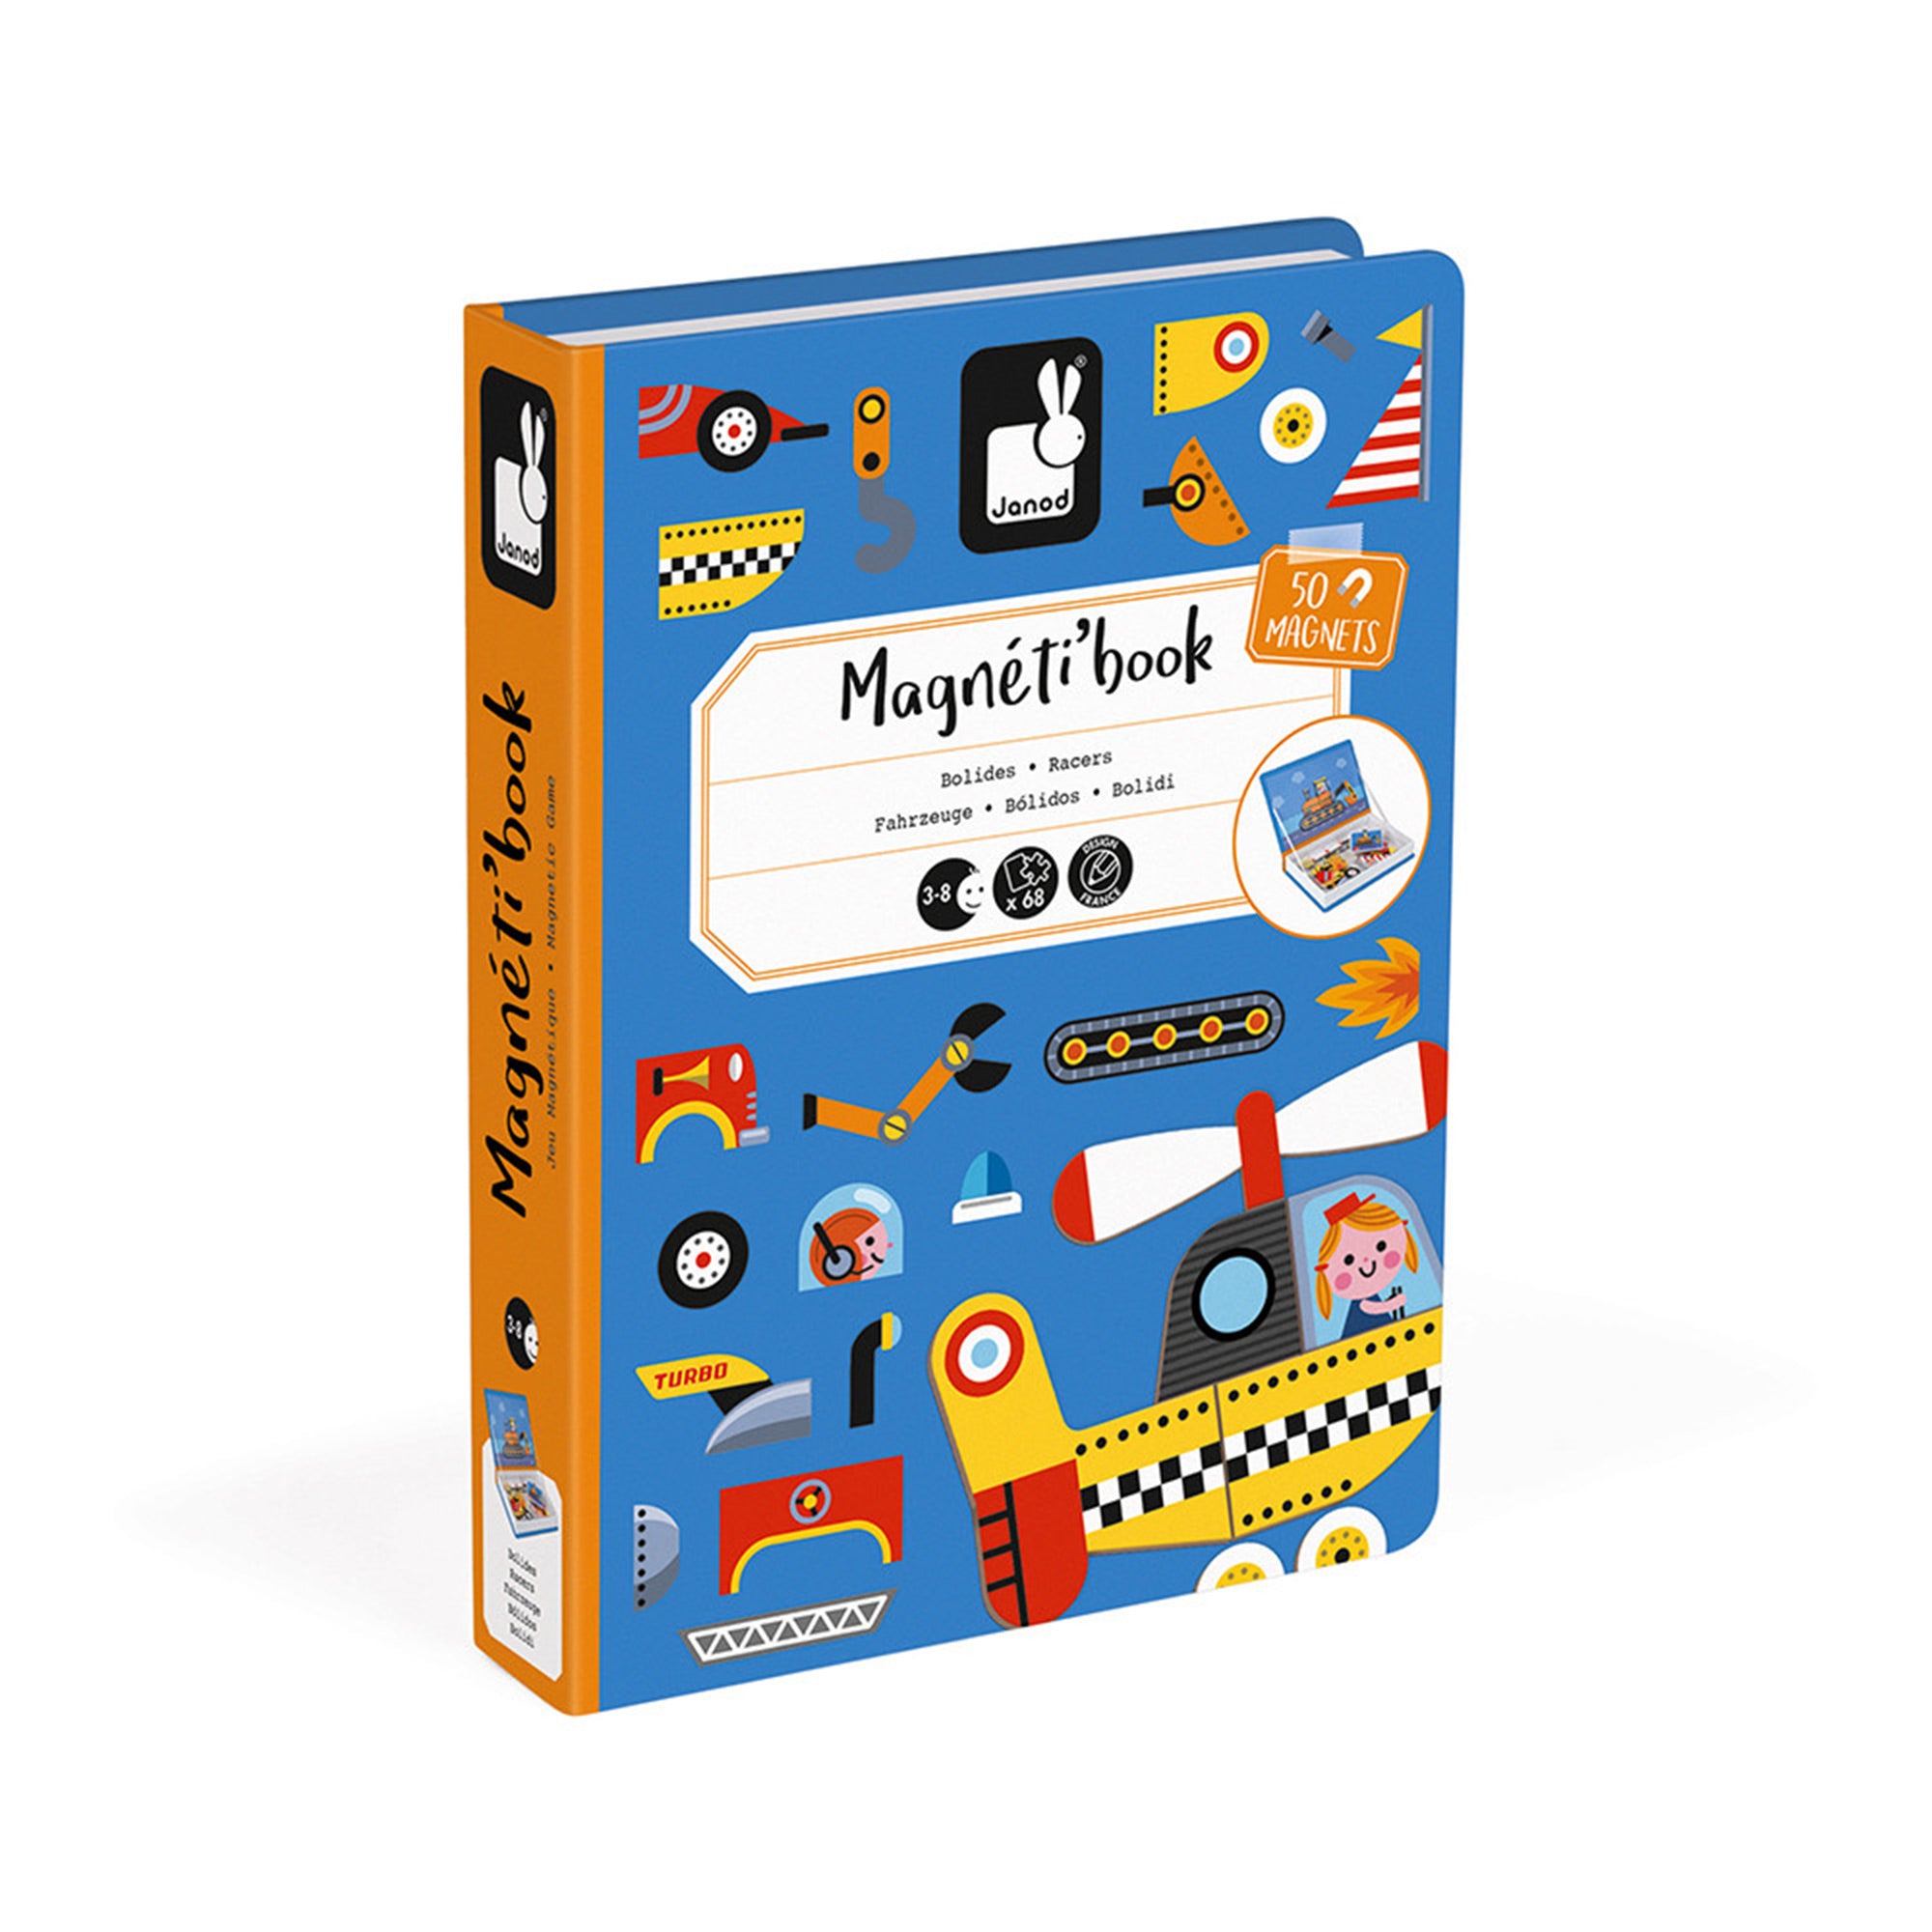 Magnéti'Book Moduloforme, jeu magnétique - Janod